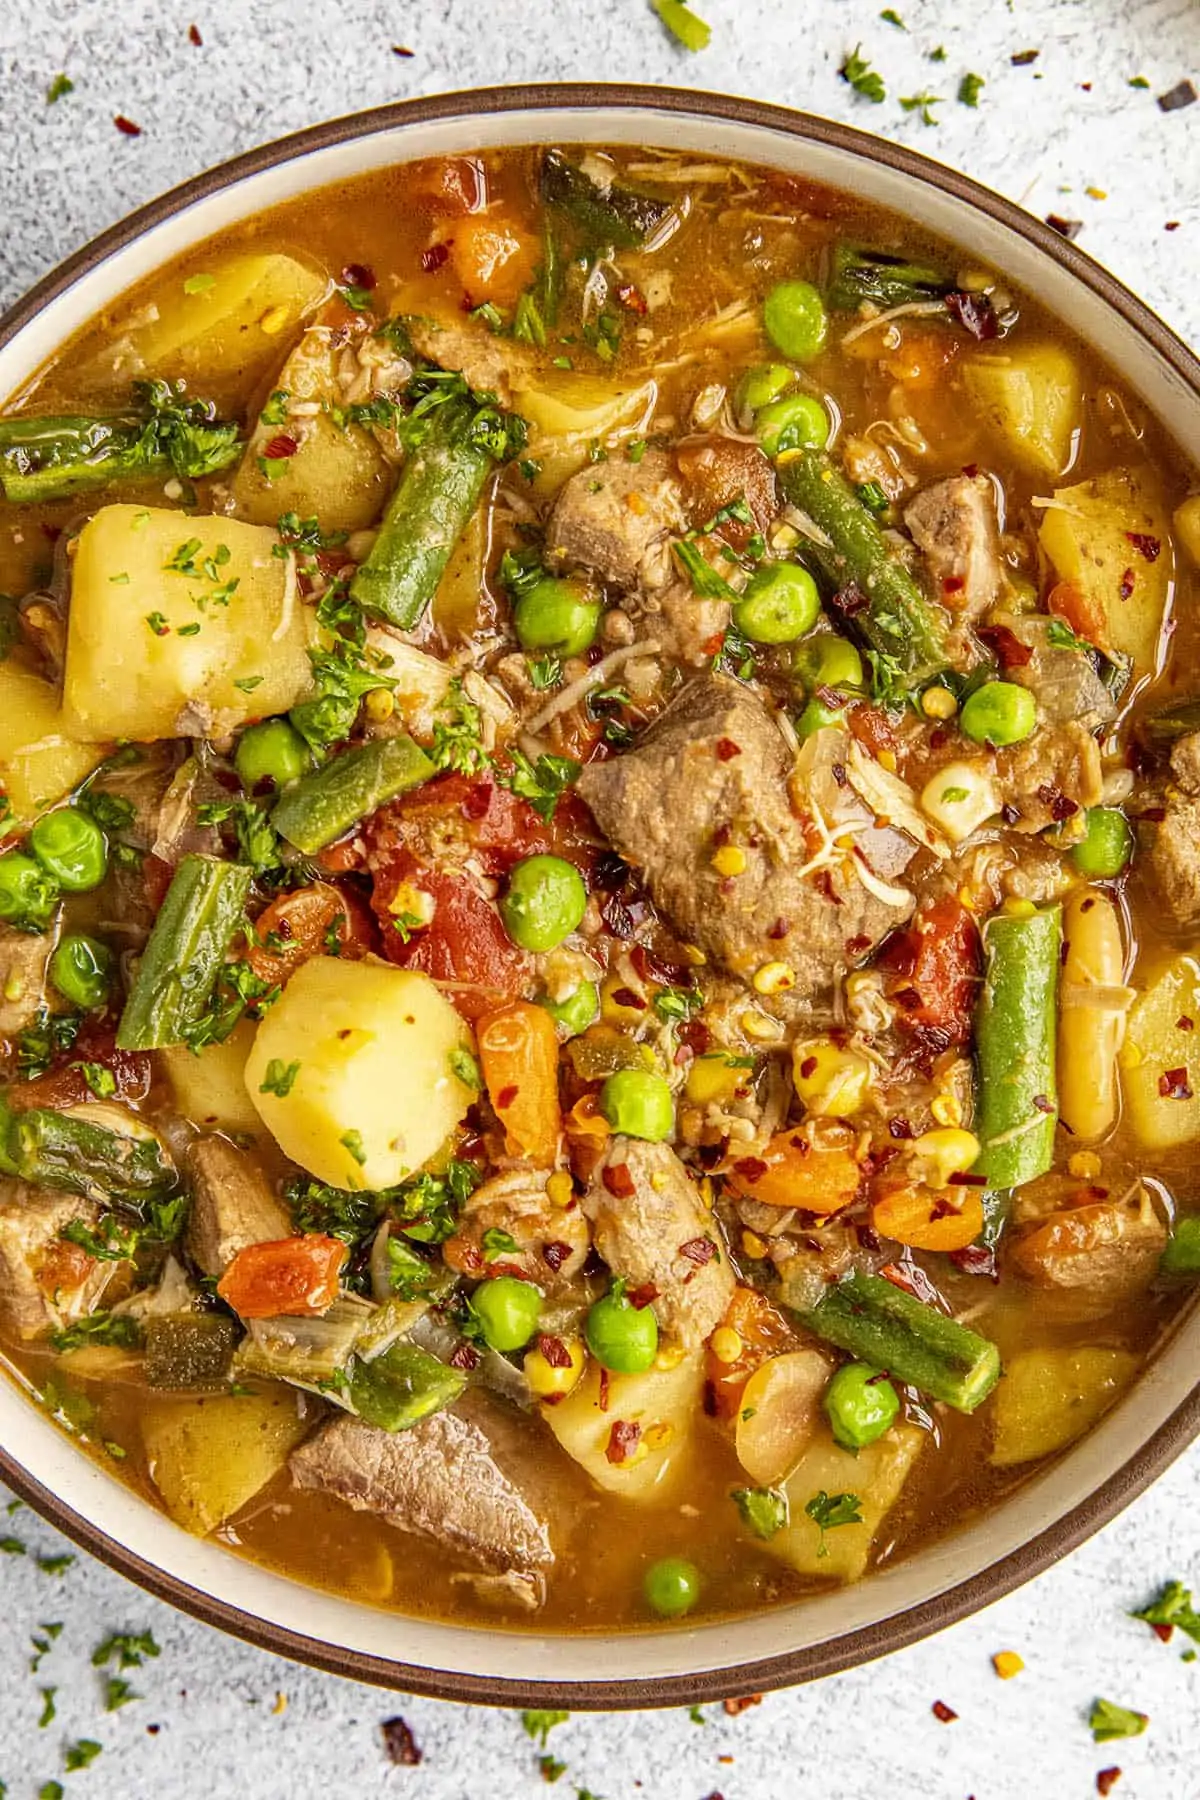 Chunky booyah stew ready to enjoy